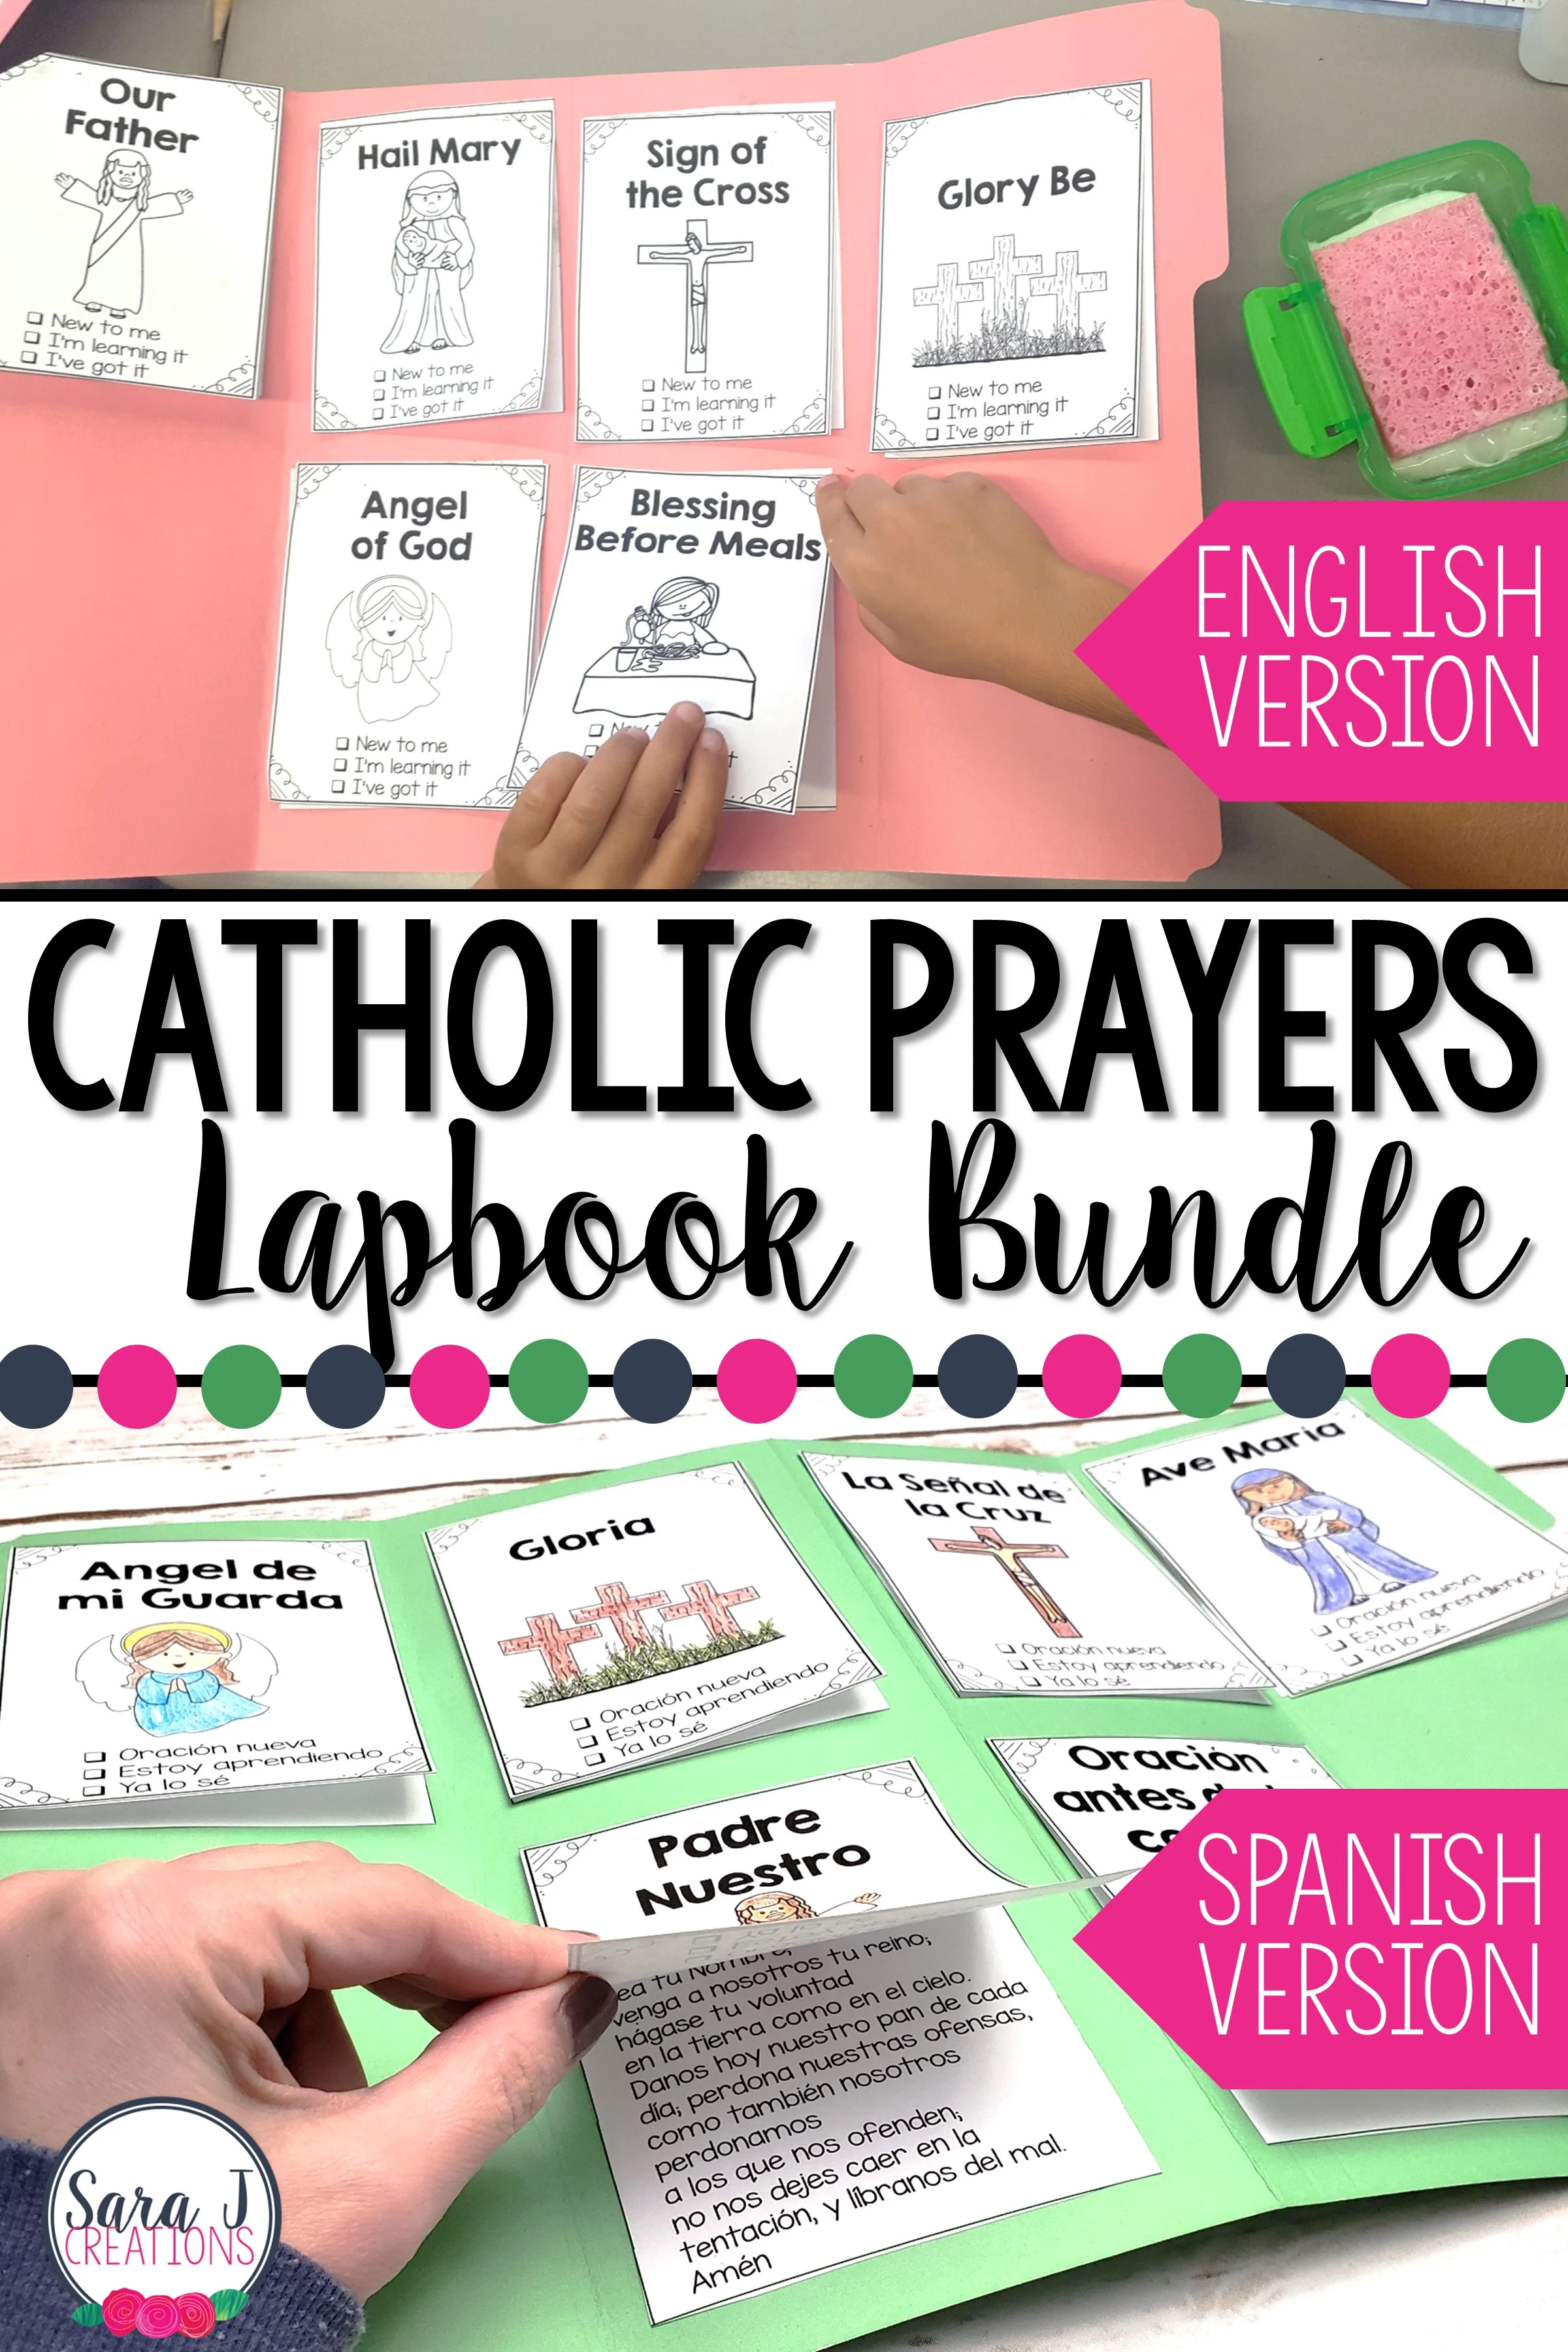 Catholic prayers lapbooks in Spanish and English bundle